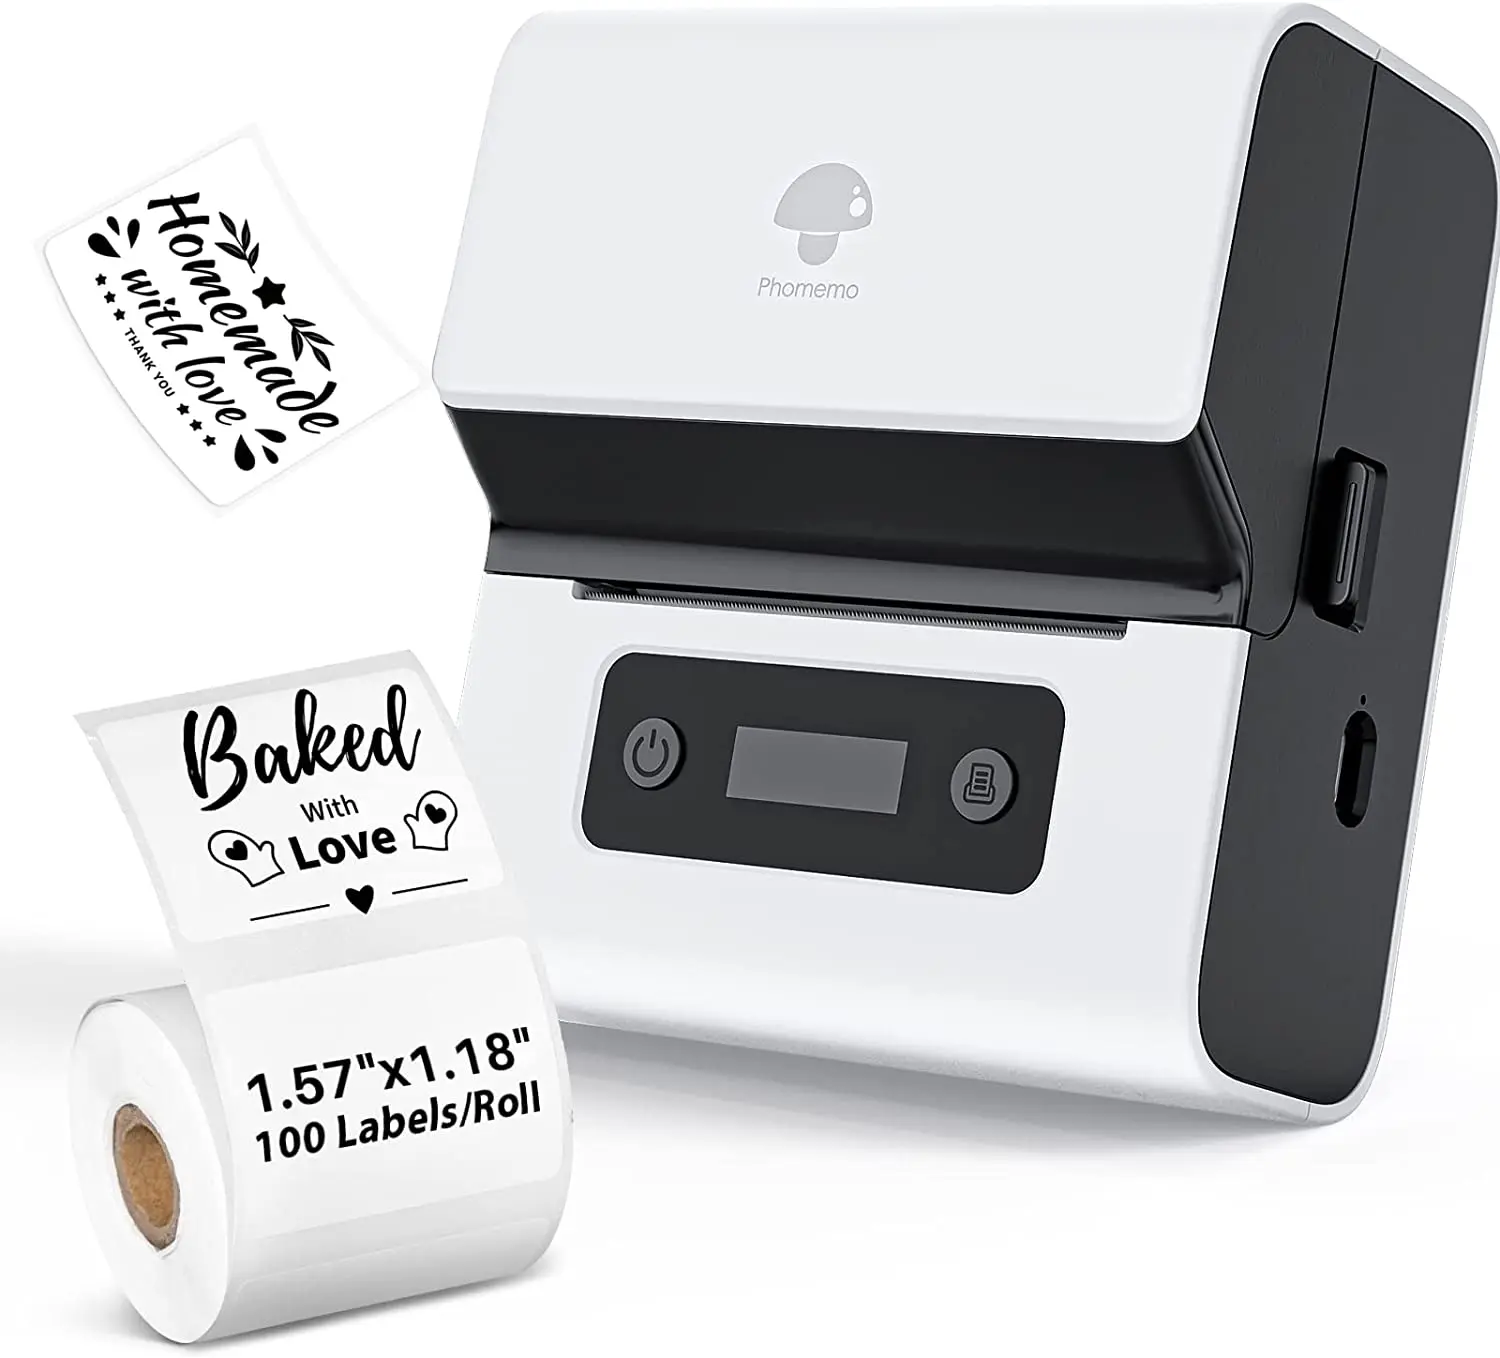 Phomemo-Imprimante d'étiquettes thermique sans fil, Mini imprimante d' autocollants, Fabricant d'étiquettes Bluetooth, Codes-barres, Étiquette de  prix, Livraison gratuite Prquinze, M221